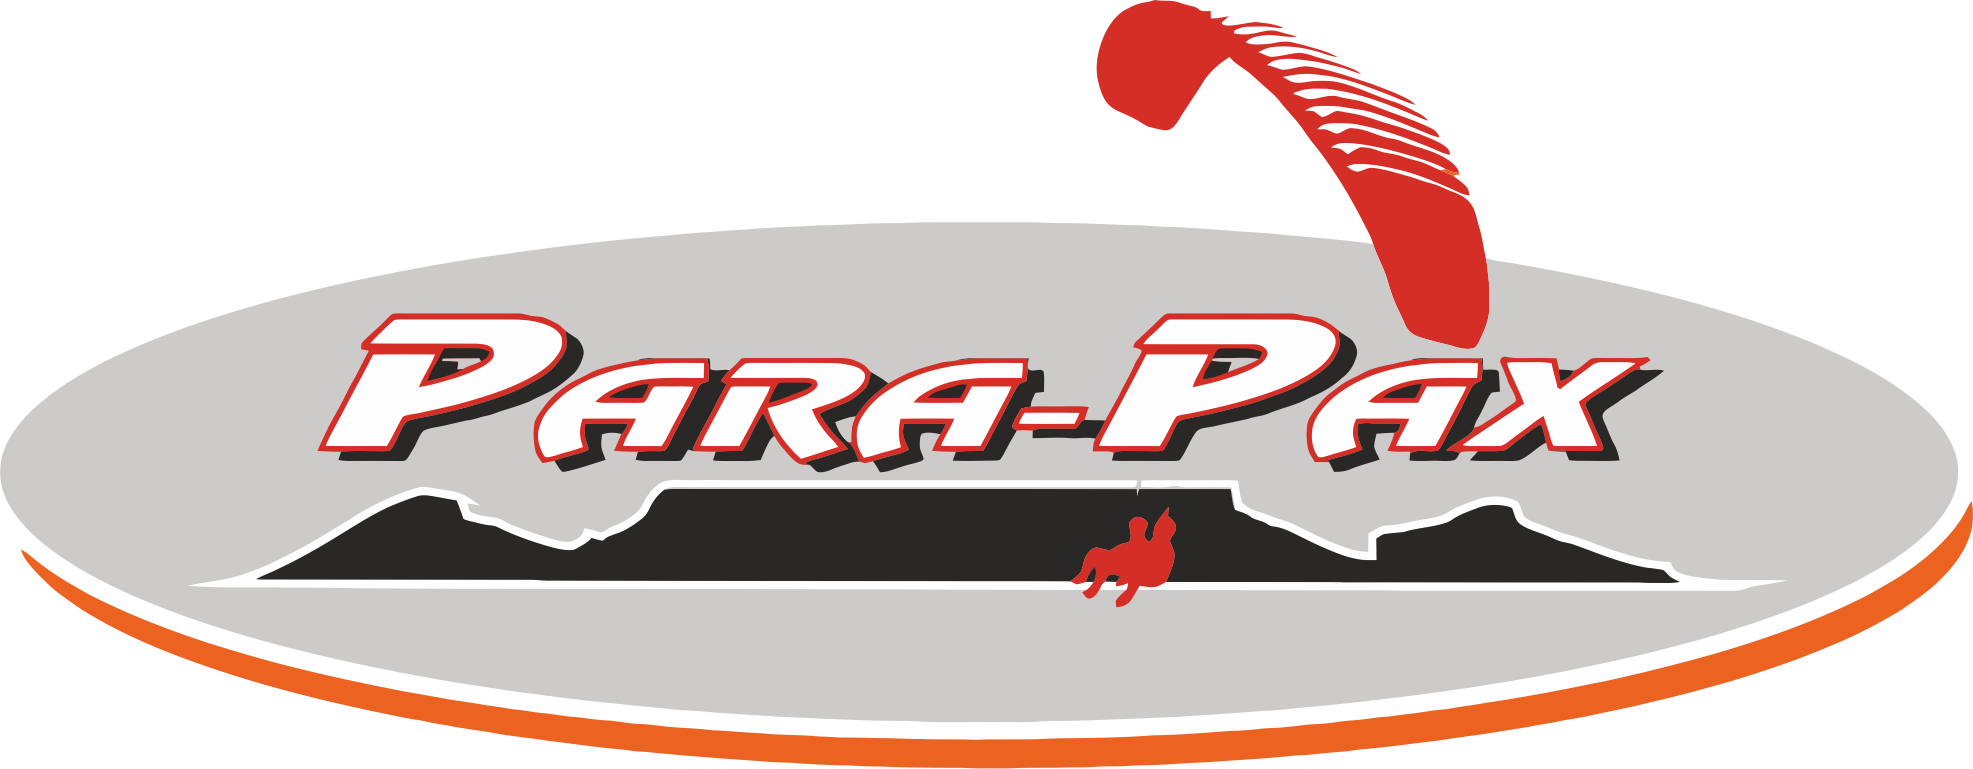 Parapax Paragliding - Cape Town